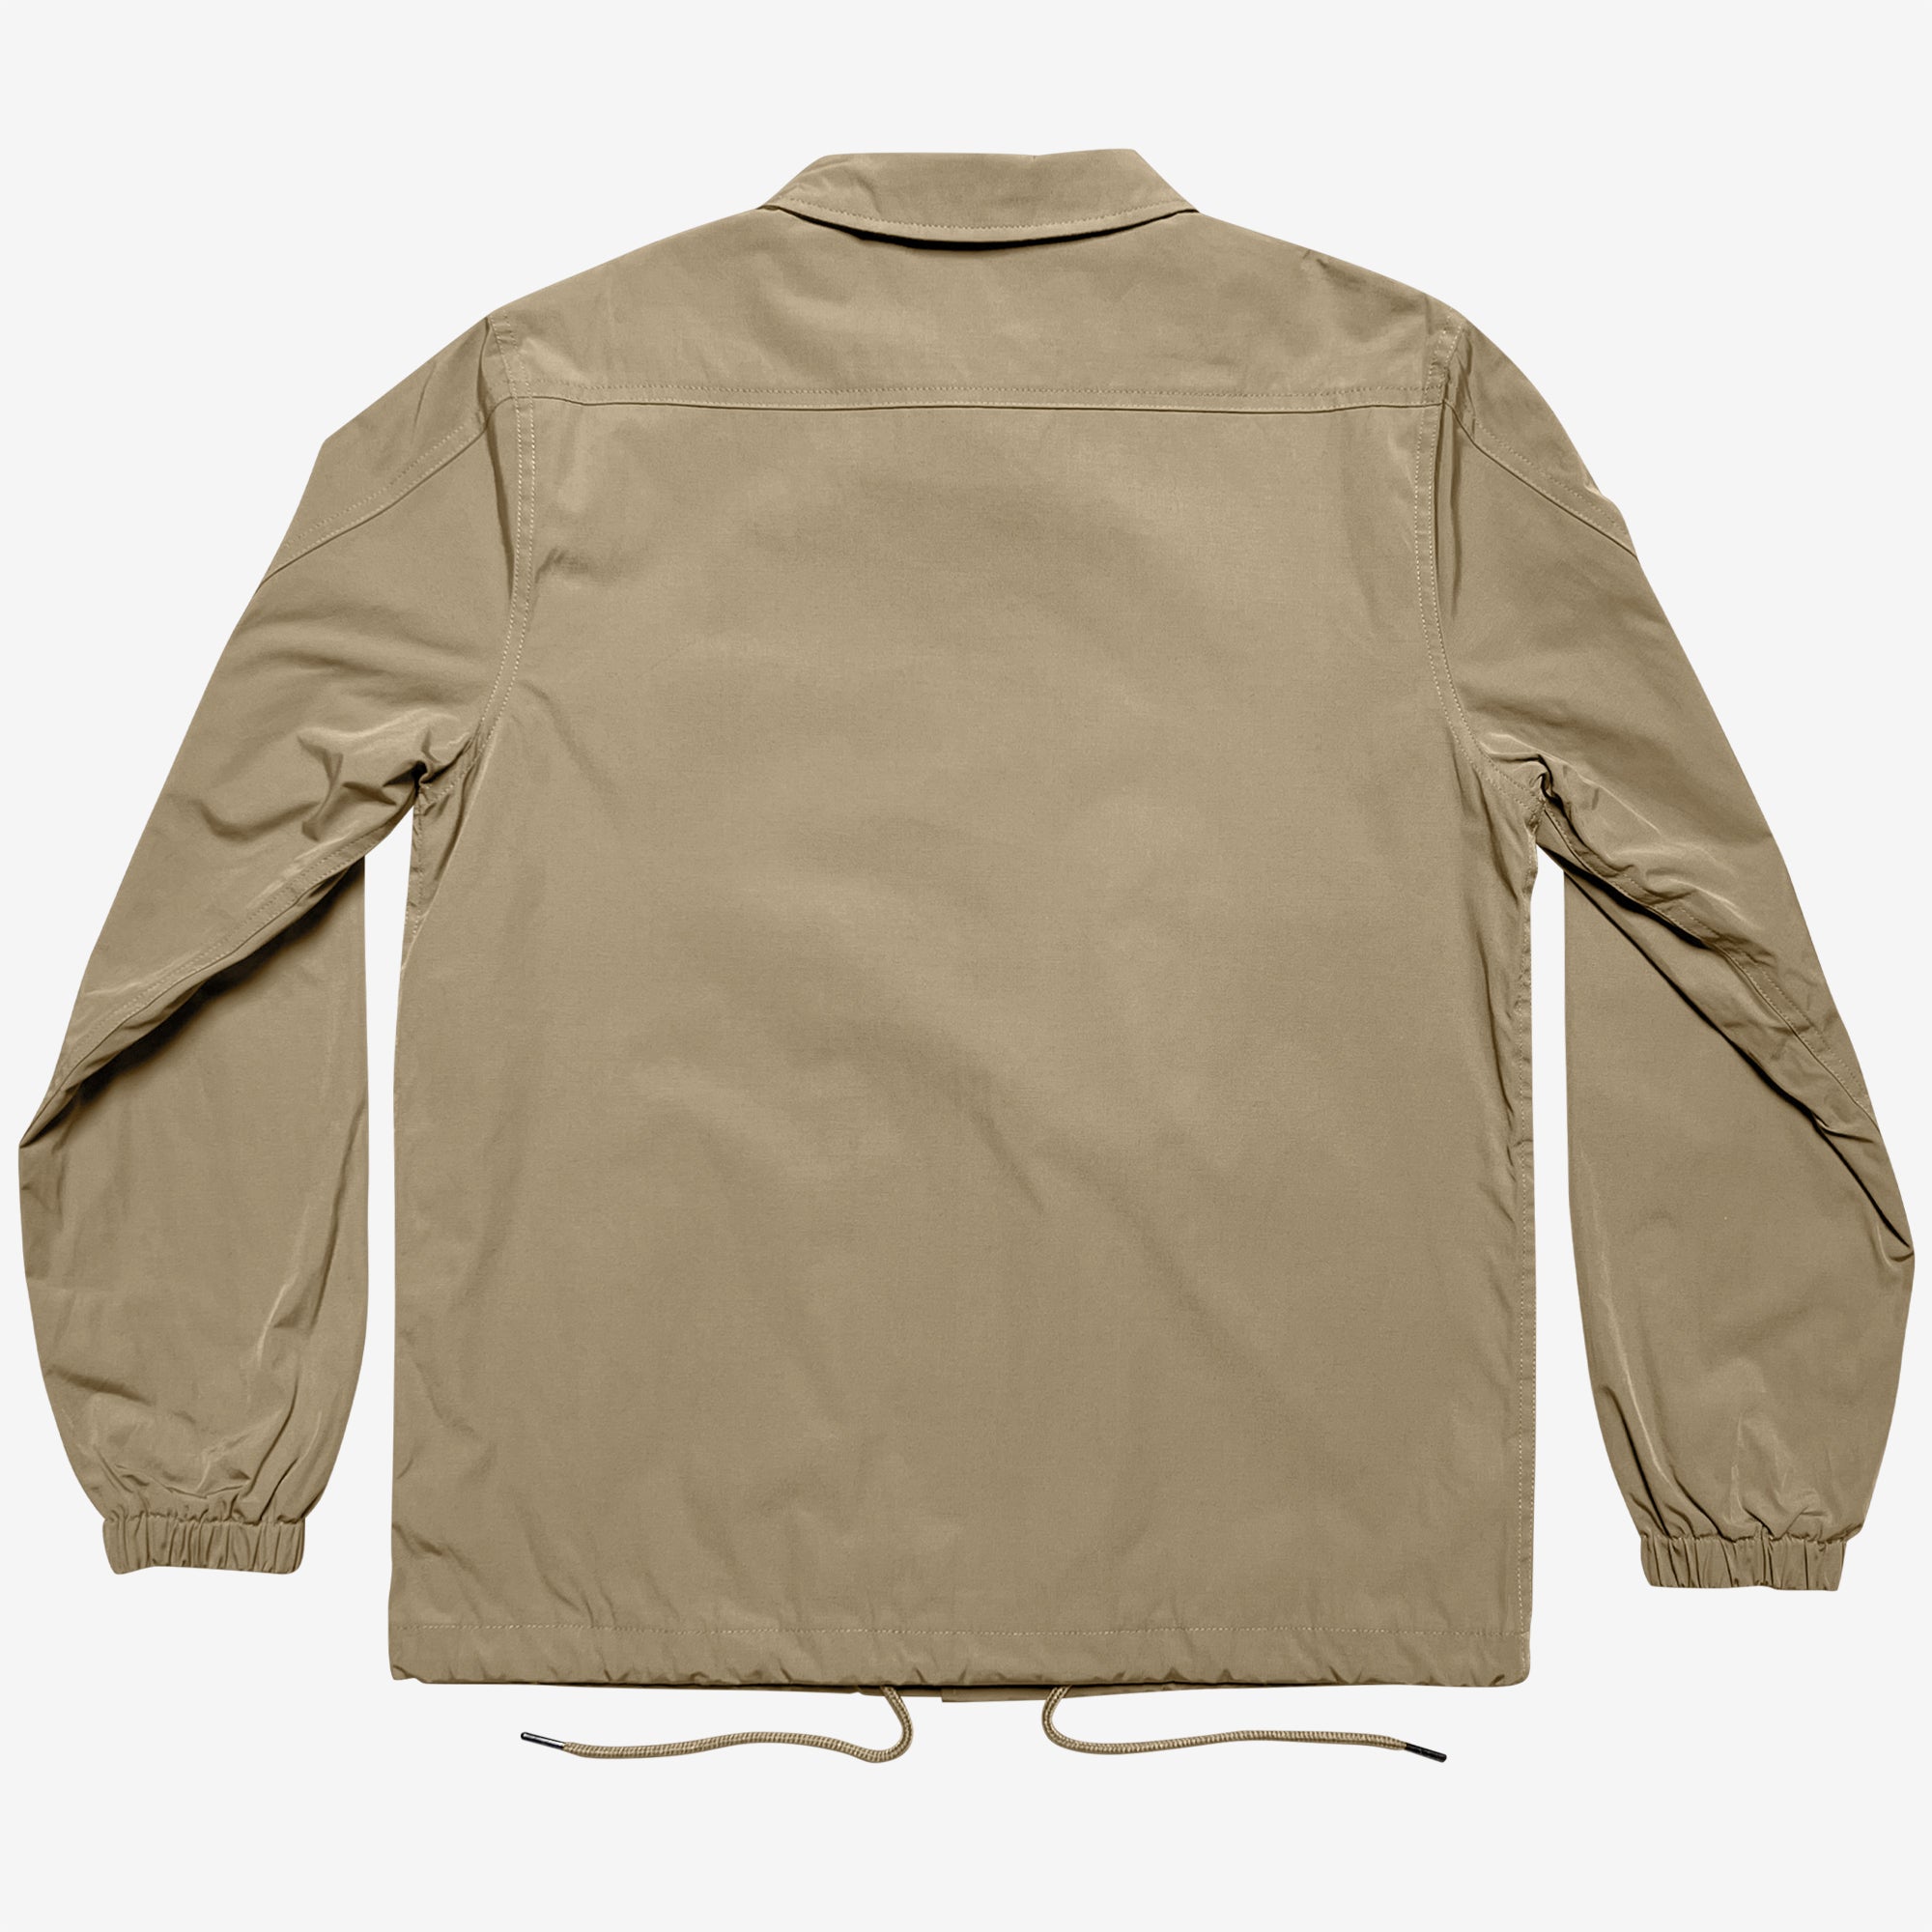 Back side of khaki cotton coaches jacket with drawstring waist.